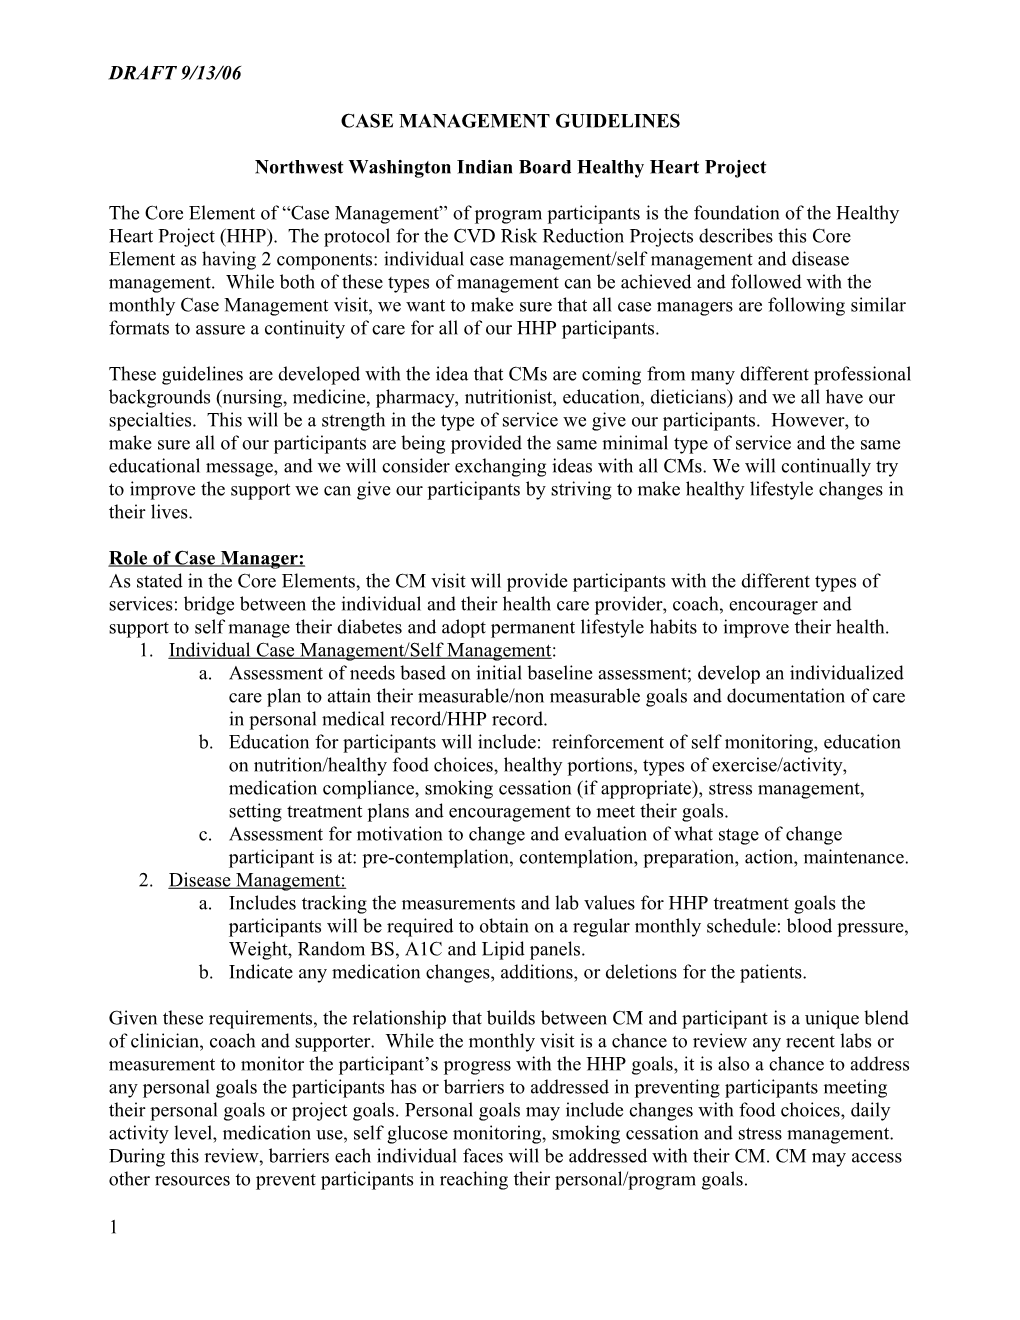 Northwest Washington Indian Heath Board Case Management Guidelines